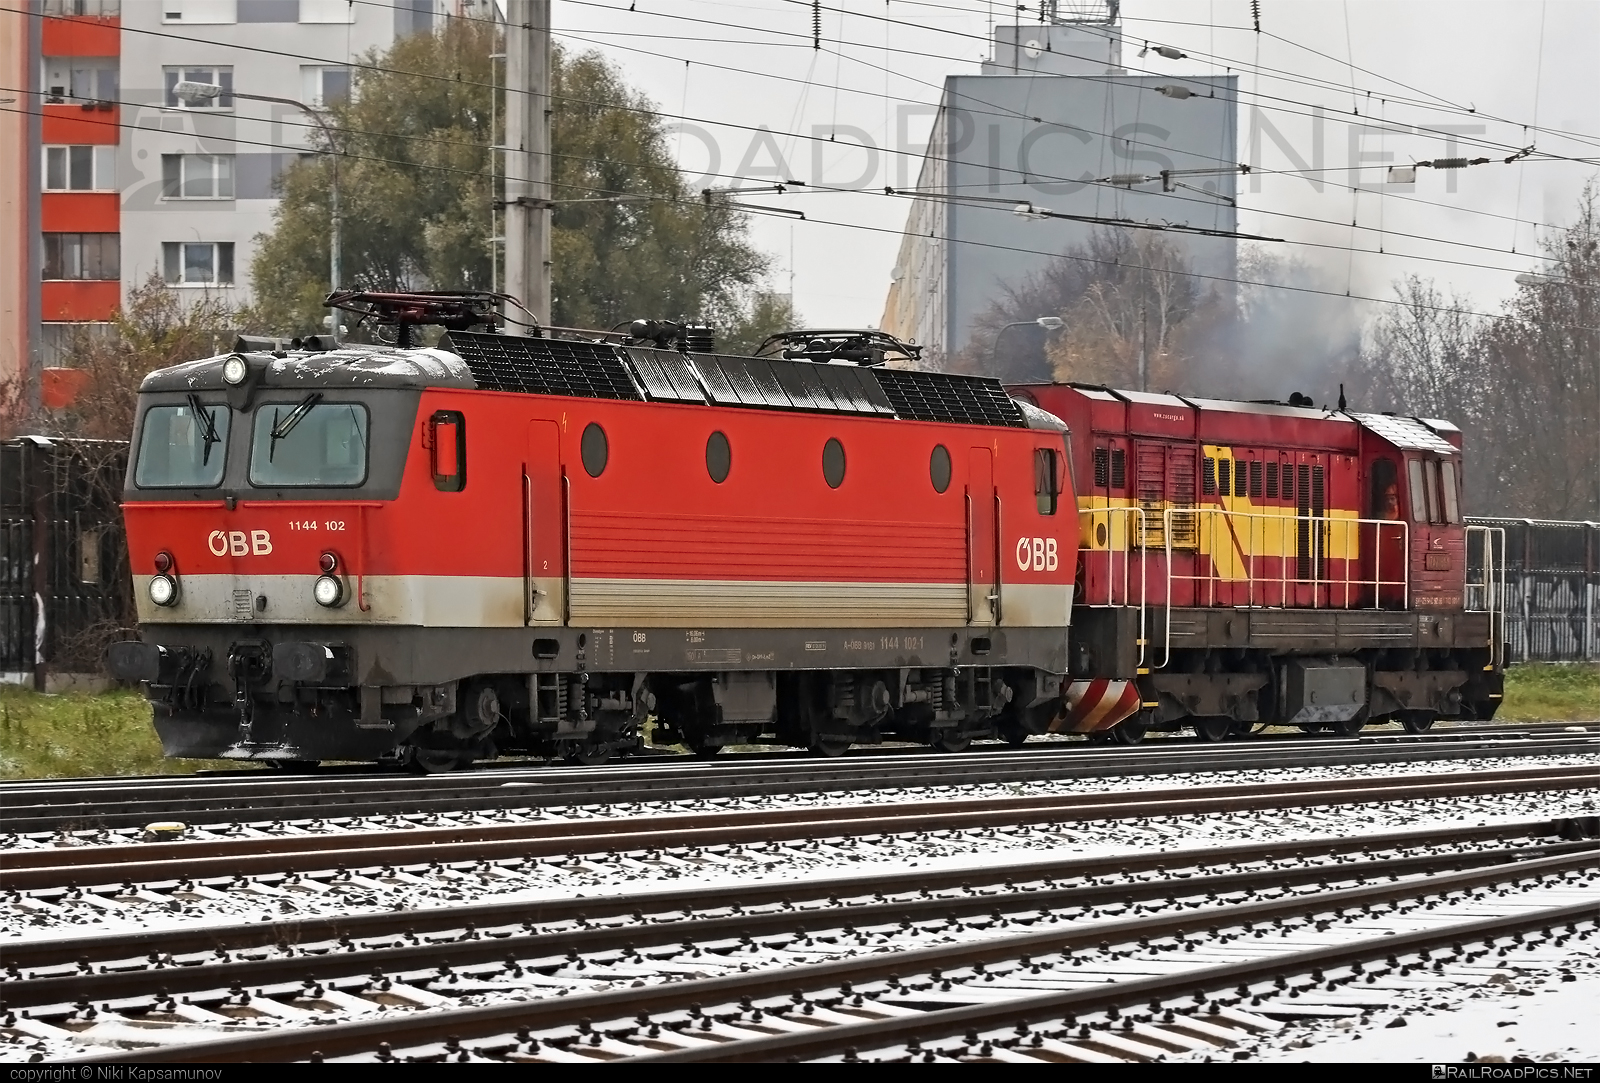 SGP ÖBB Class 1144 - 1144 102 operated by Rail Cargo Austria AG #obb #obb1144 #obbClass1144 #osterreichischebundesbahnen #rcw #sgp #sgp1144 #simmeringgrazpauker